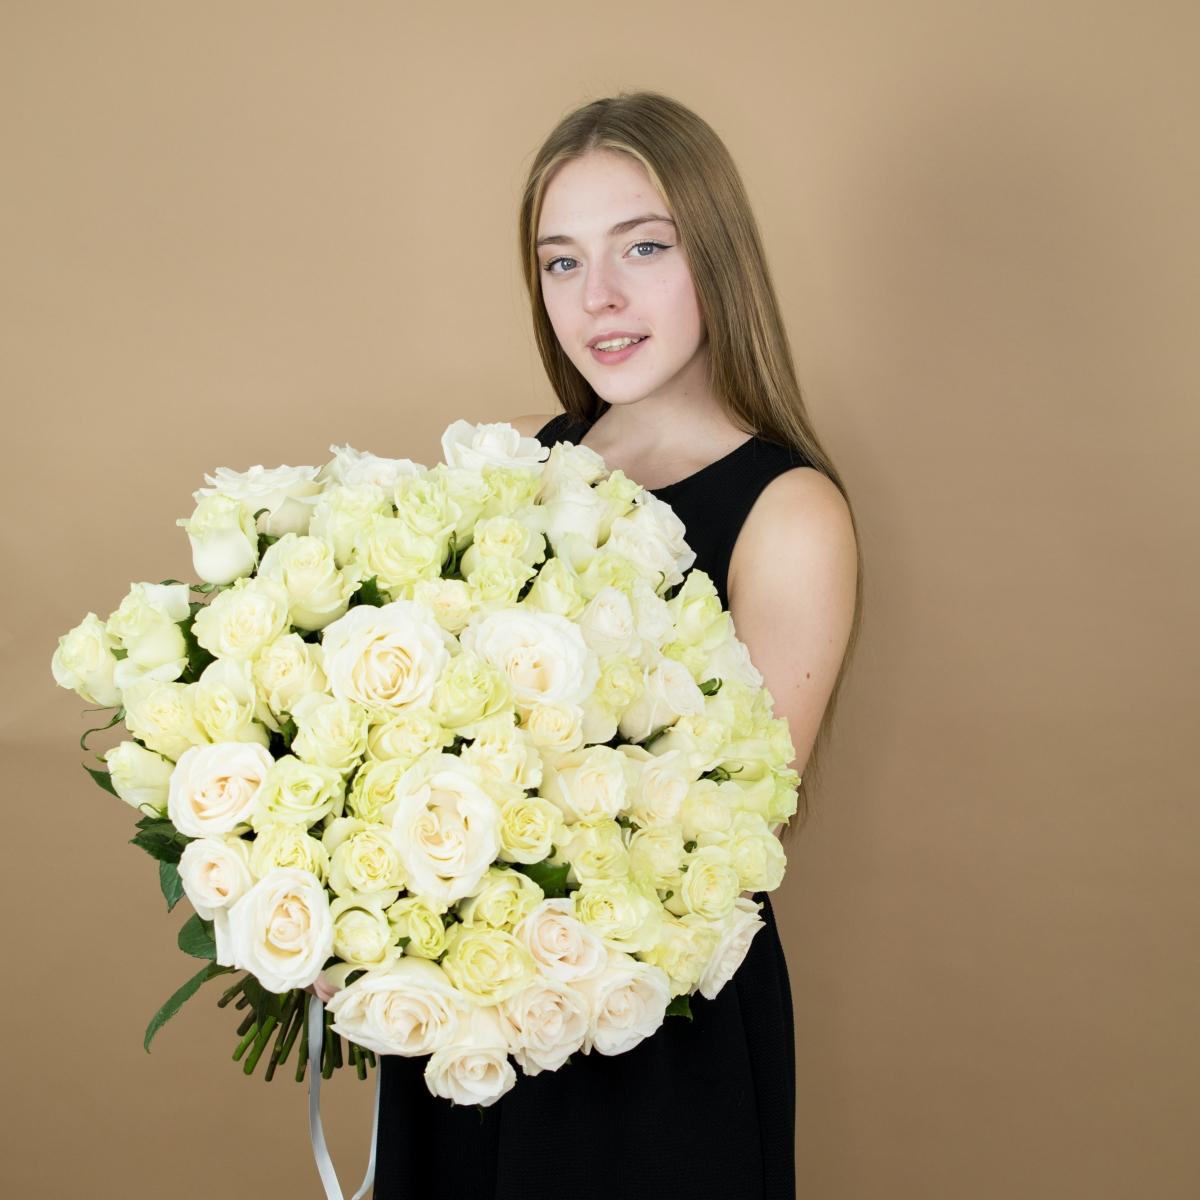 Букет из белых роз 101 шт 40 см (Эквадор) артикул: 20535